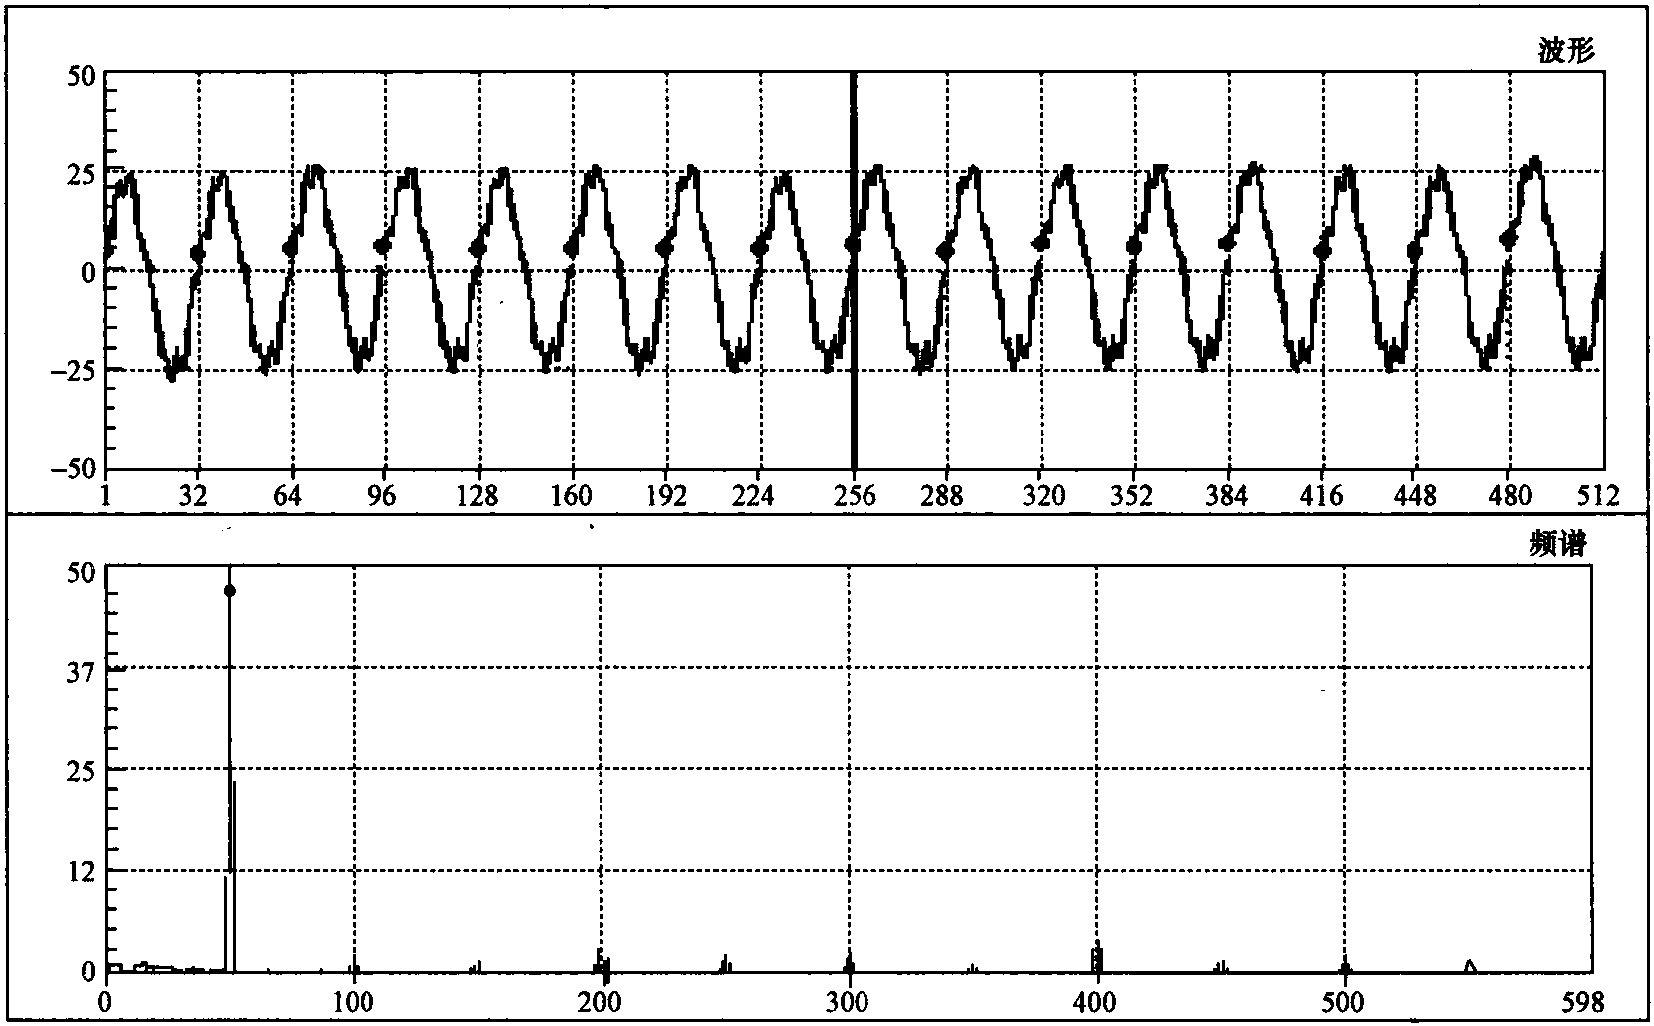 二、不平衡转子的振动信号的典型特征